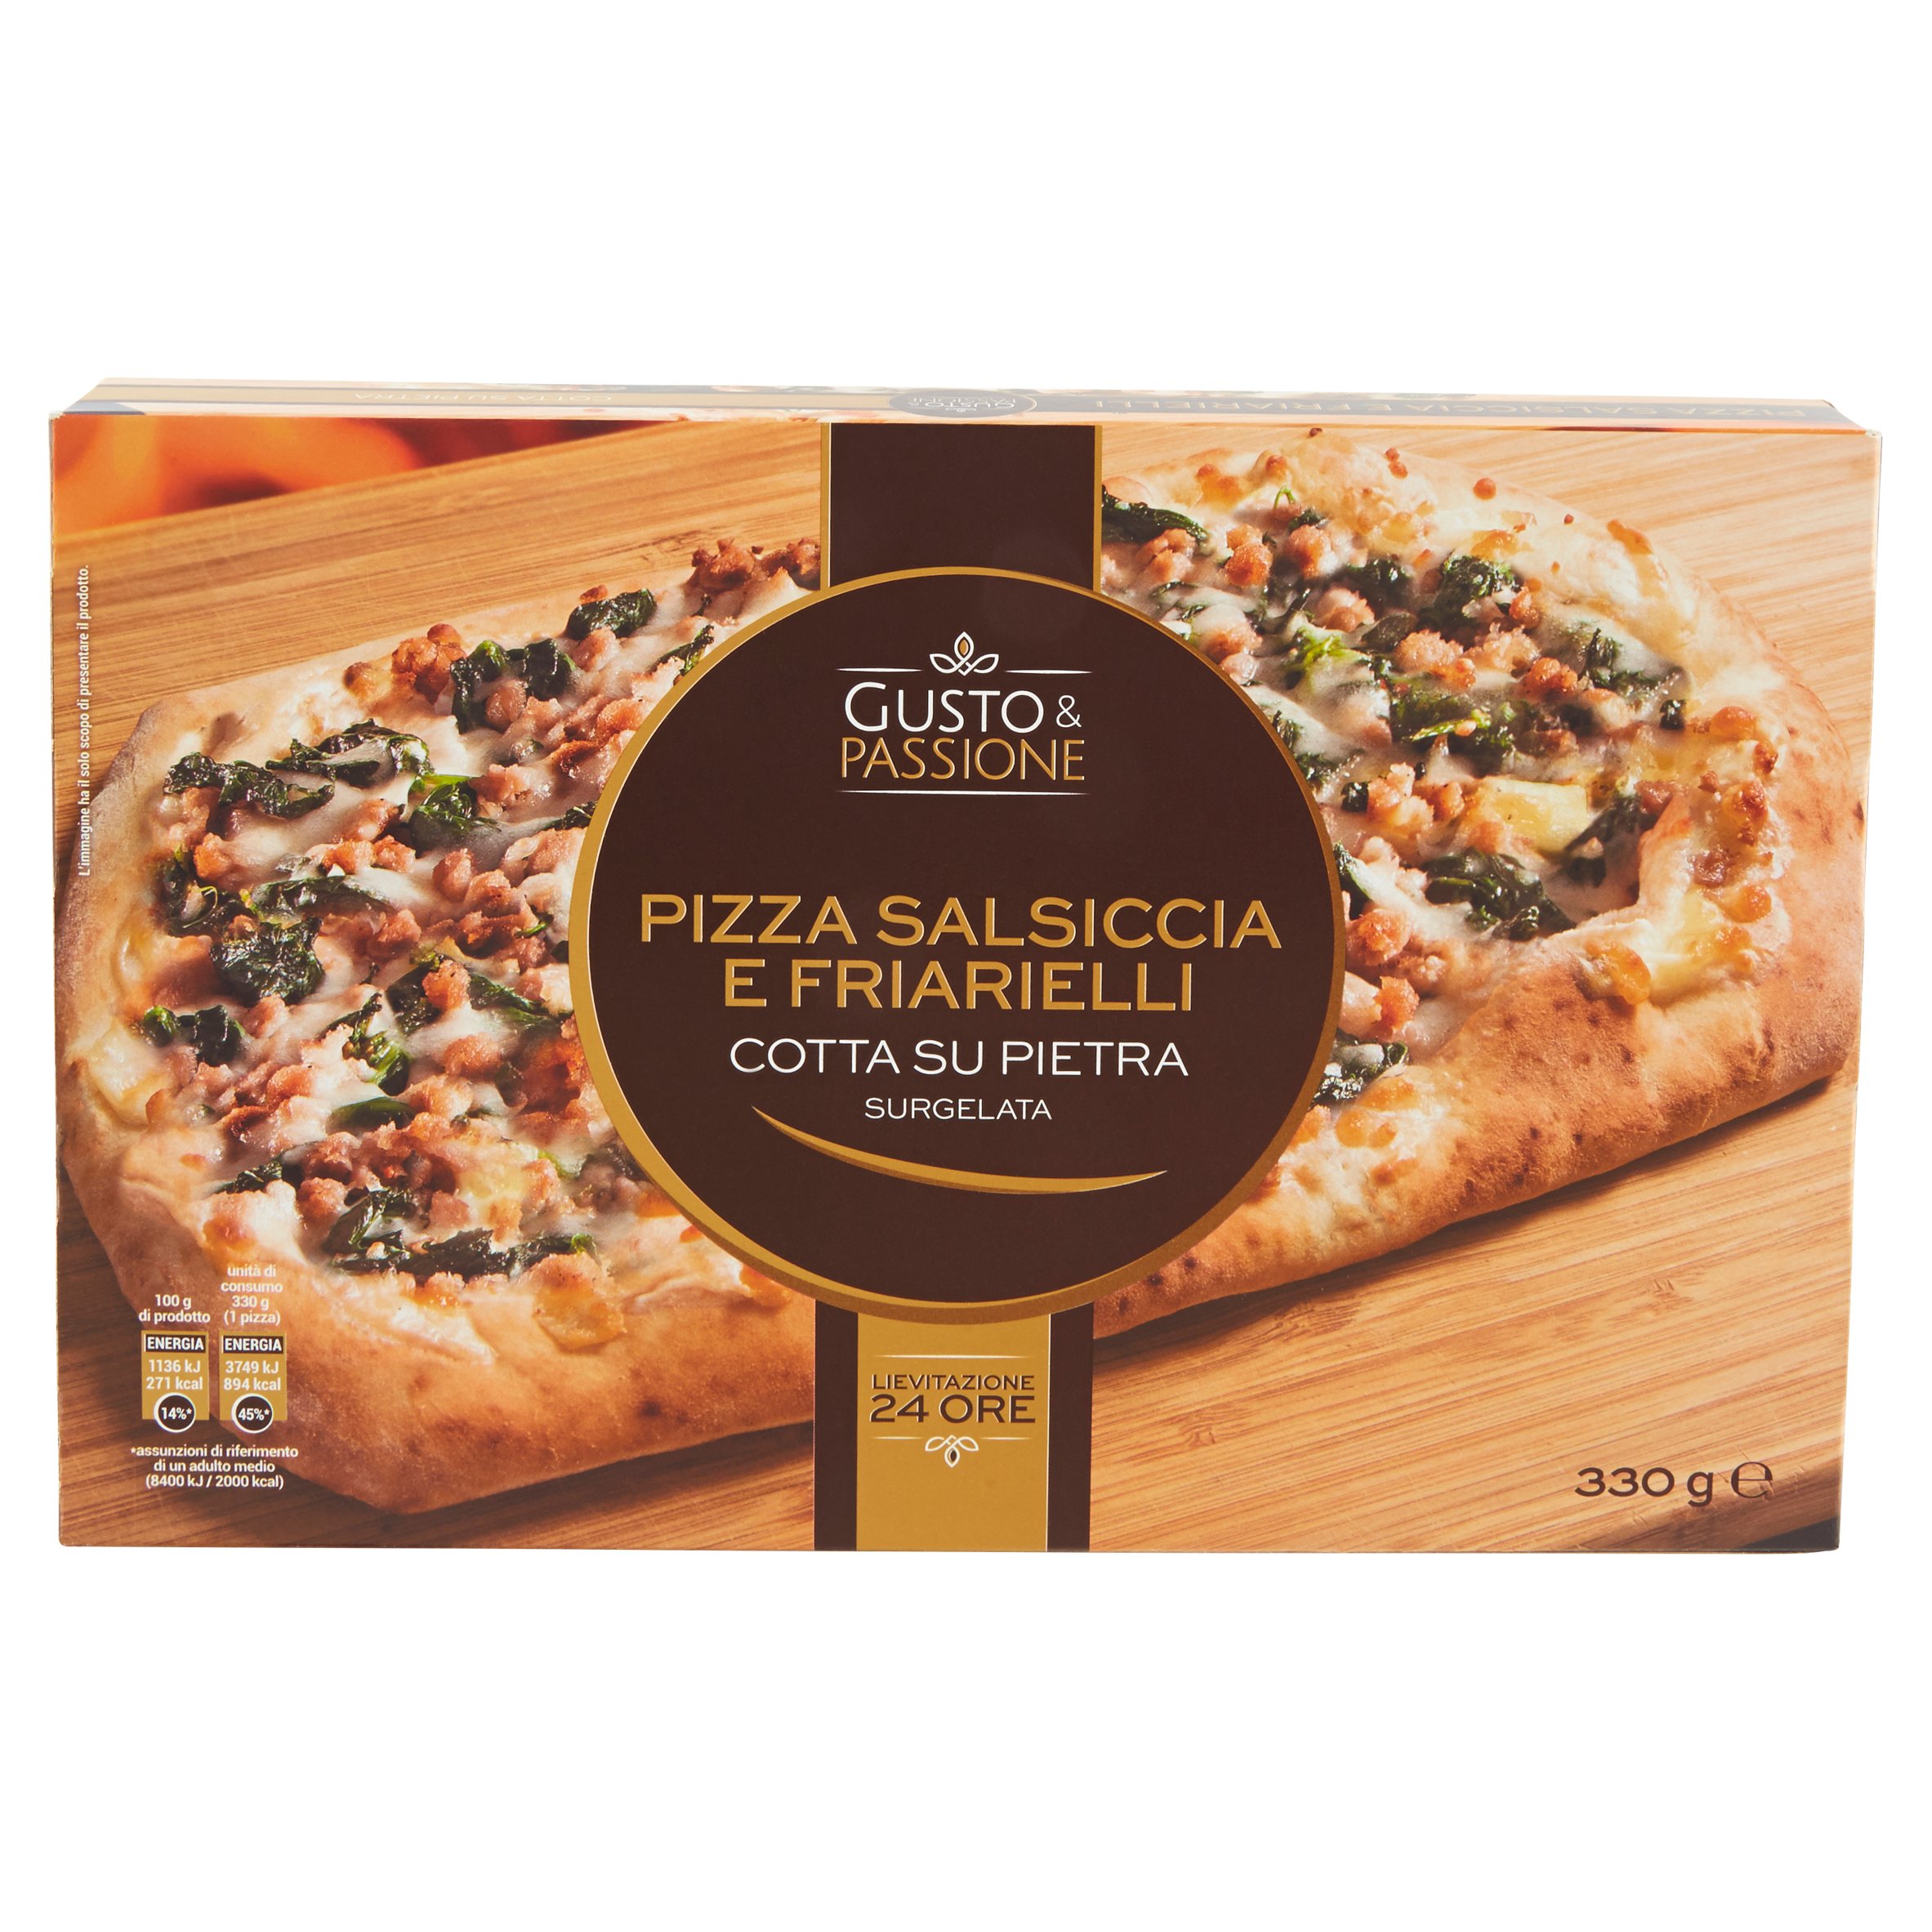 Gusto & Passione Pizza Salsiccia e Friarelli Surgelata 330 g